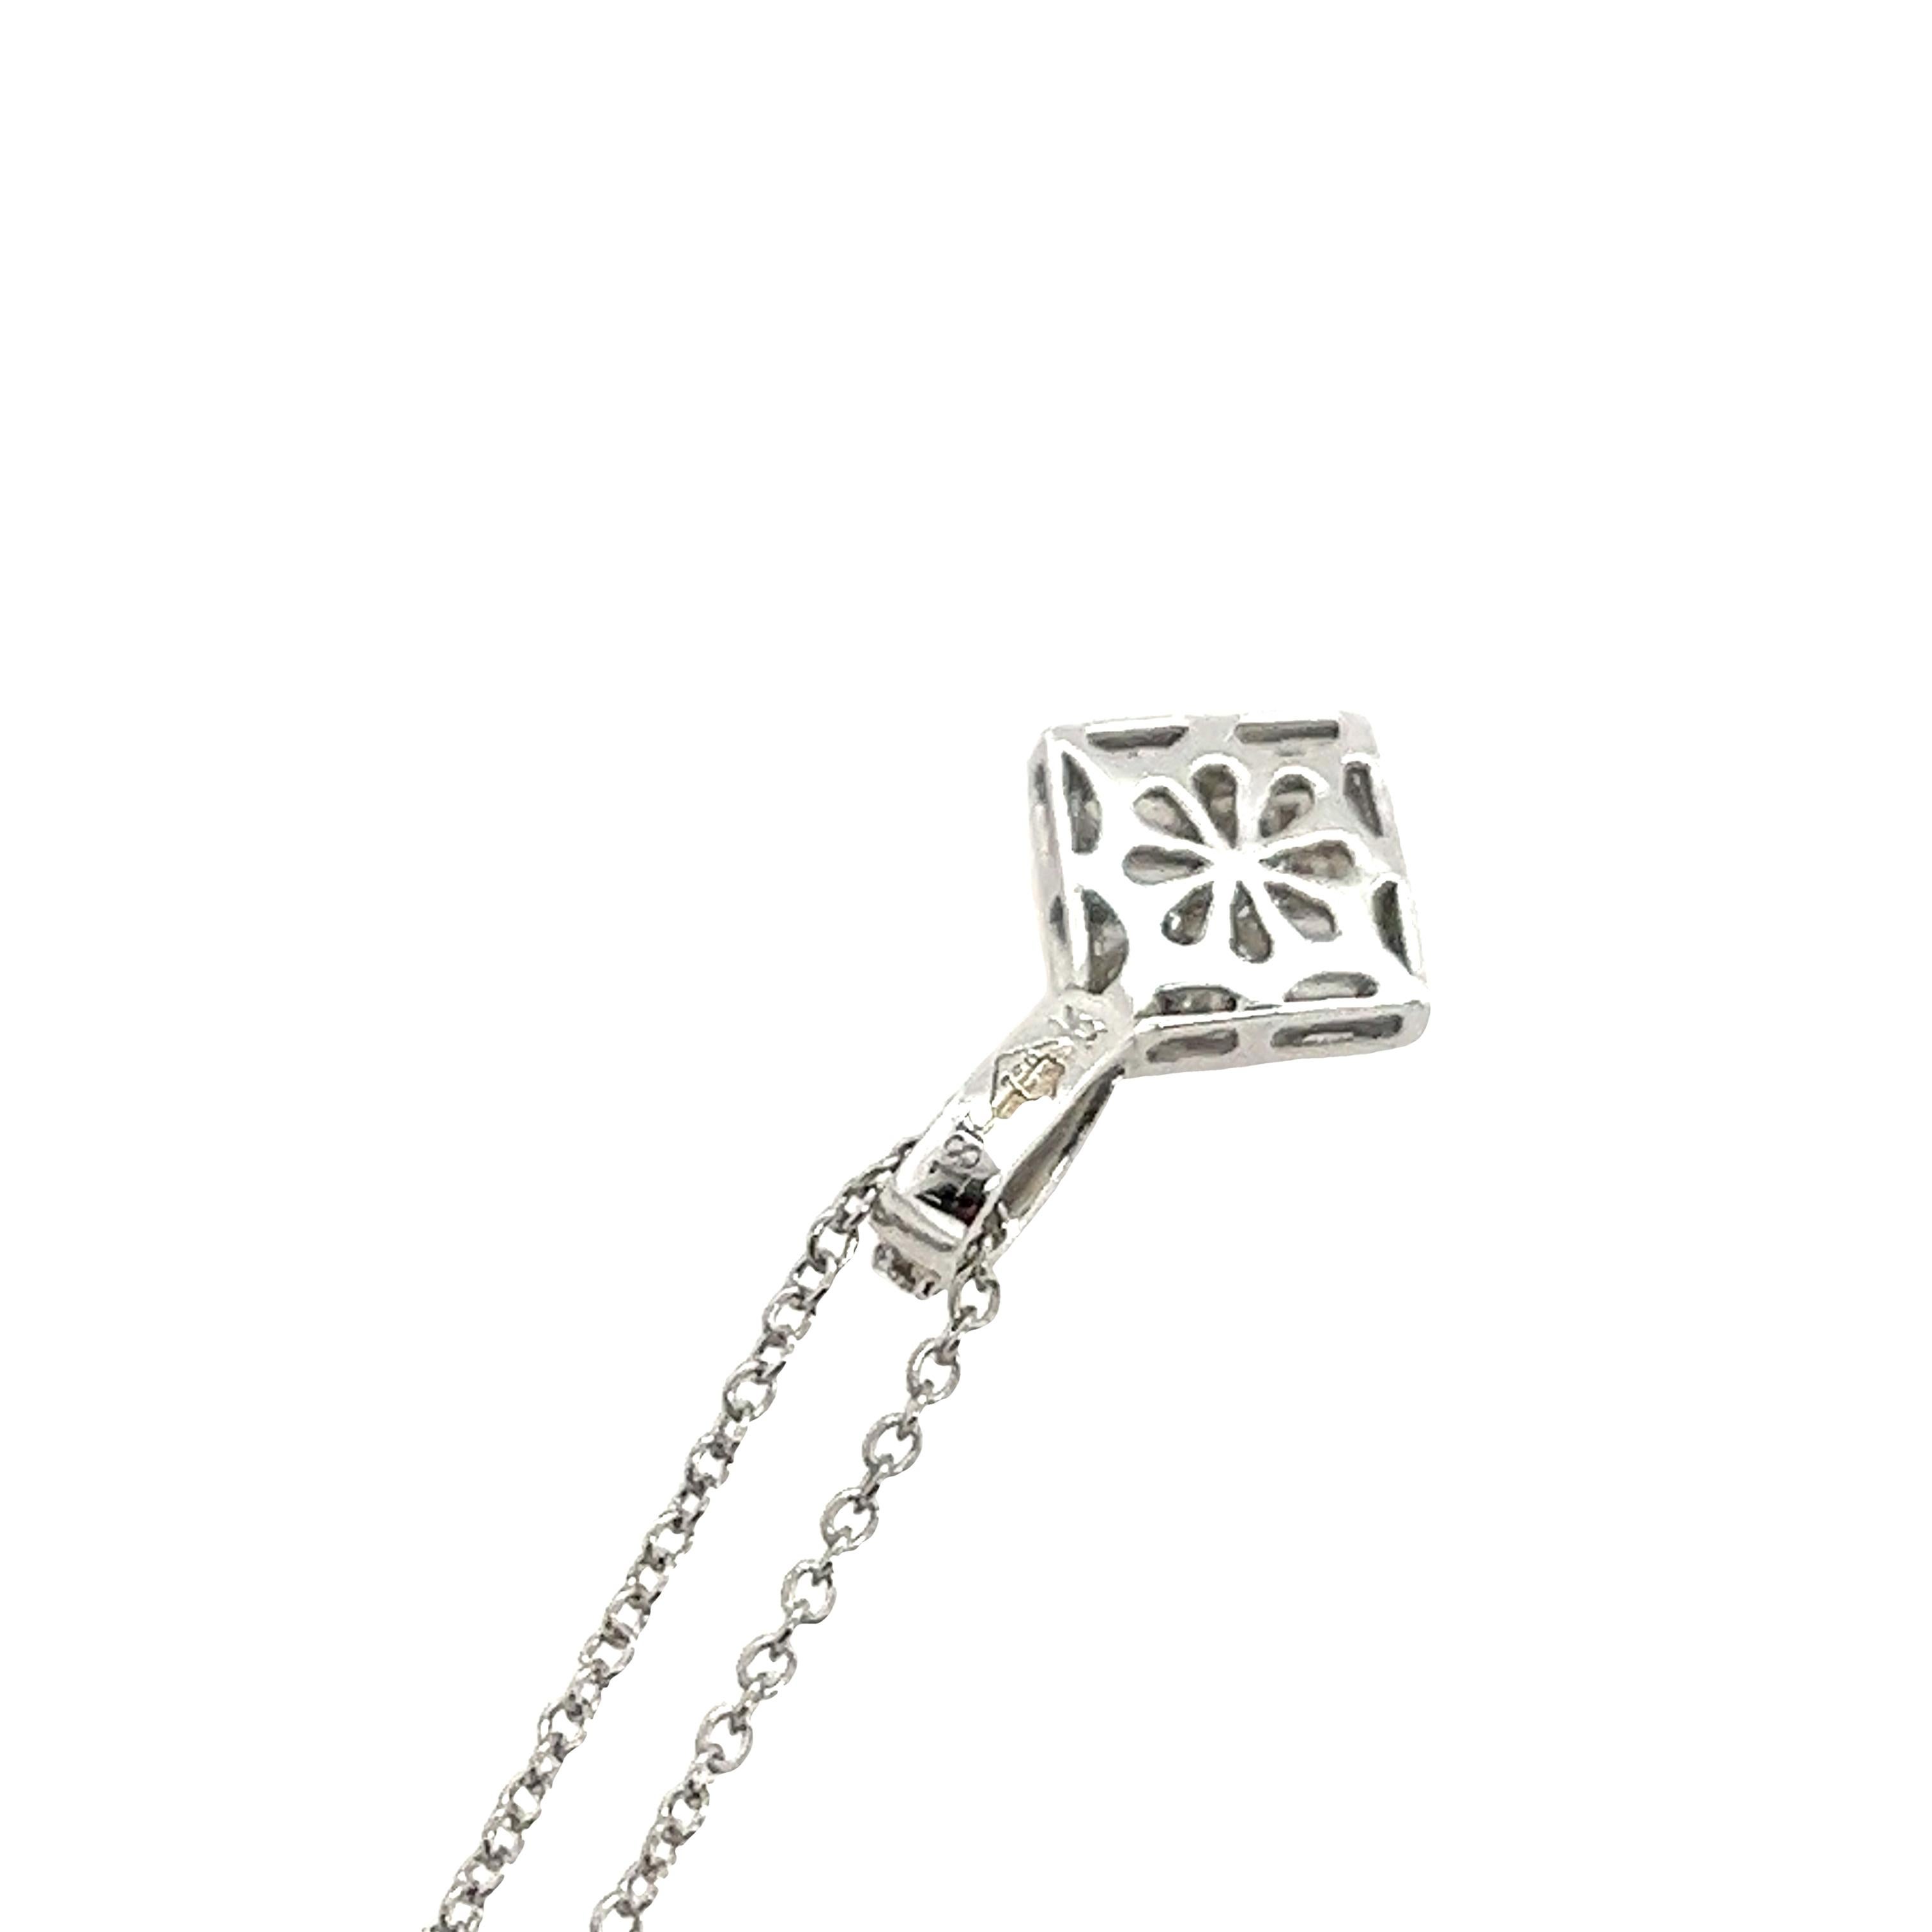 Diese Halskette ist so konzipiert, dass sie den Anhänger in der Mitte der Brust hält. Sie ist mit 12 runden Diamanten im Brillantschliff und 4 Diamanten im Baguetteschliff 0,25ct H/SI1 besetzt.
Dies ist ein sehr elegantes und schönes Schmuckstück,